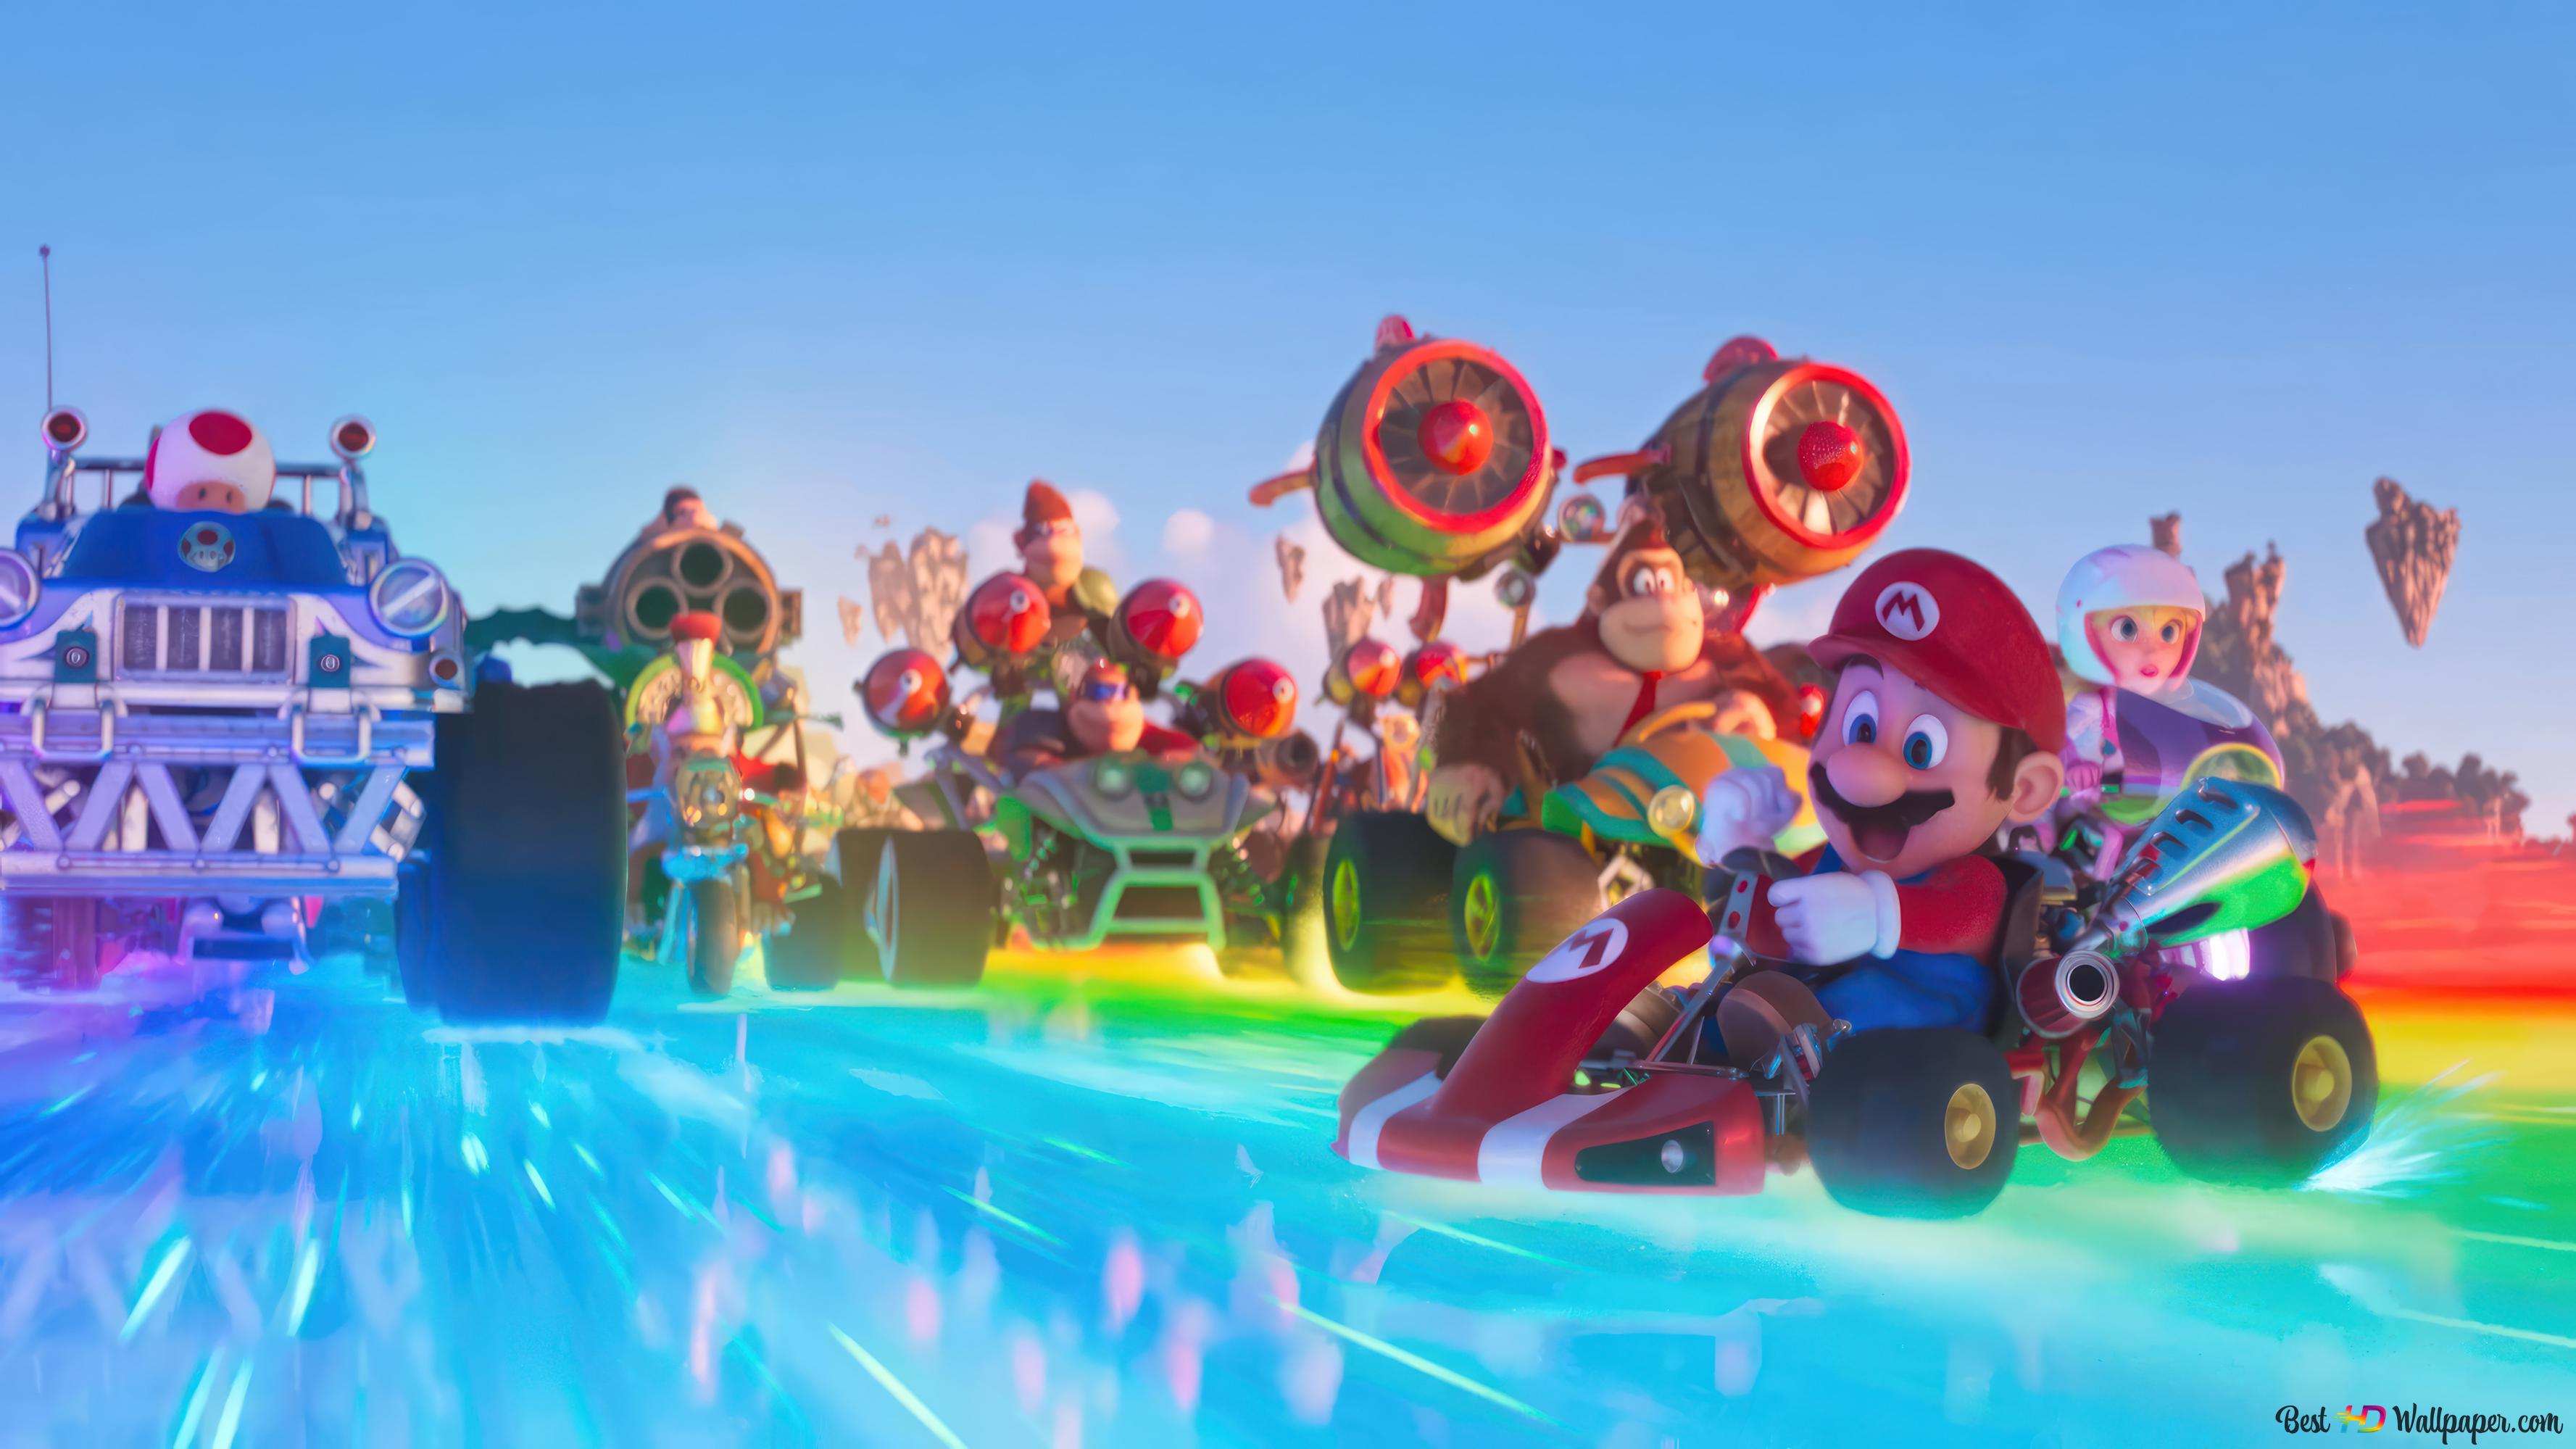 Mario' Kart Racing. Super Mario Bros. (movie) 4K wallpaper download